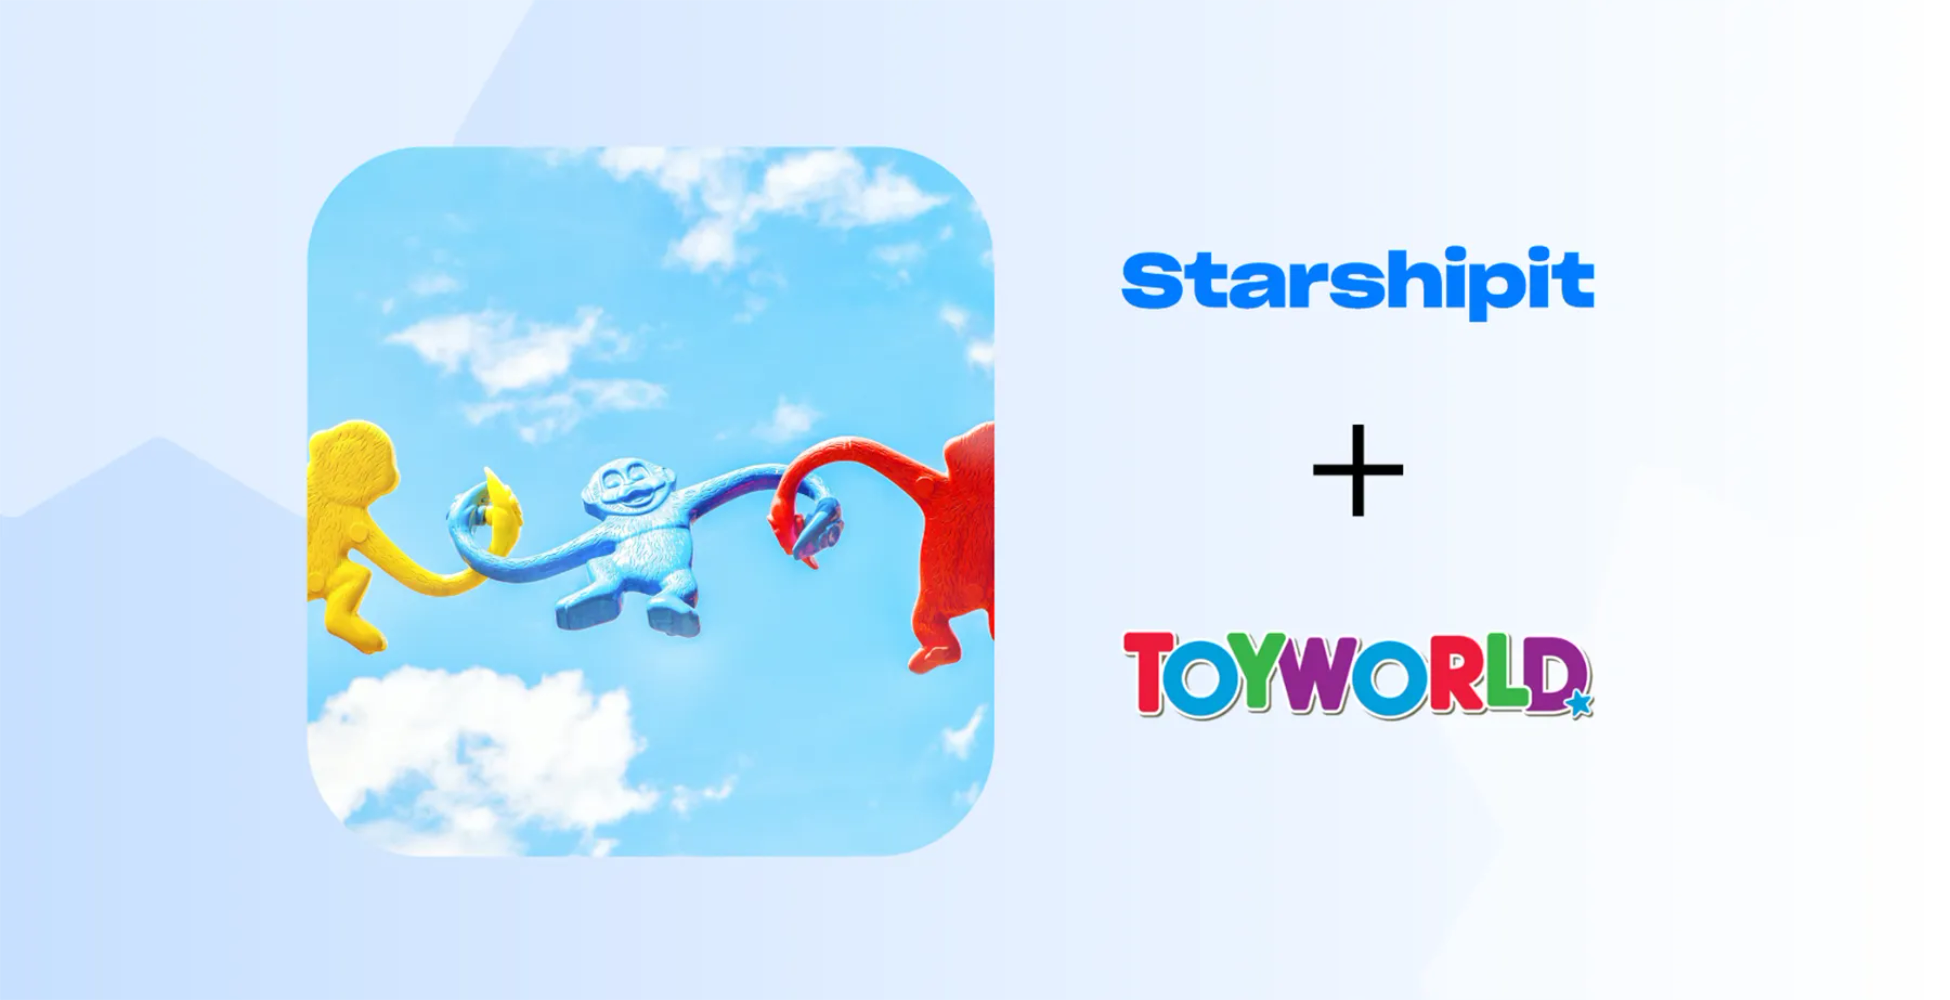 Starshipit and Toyworld case study